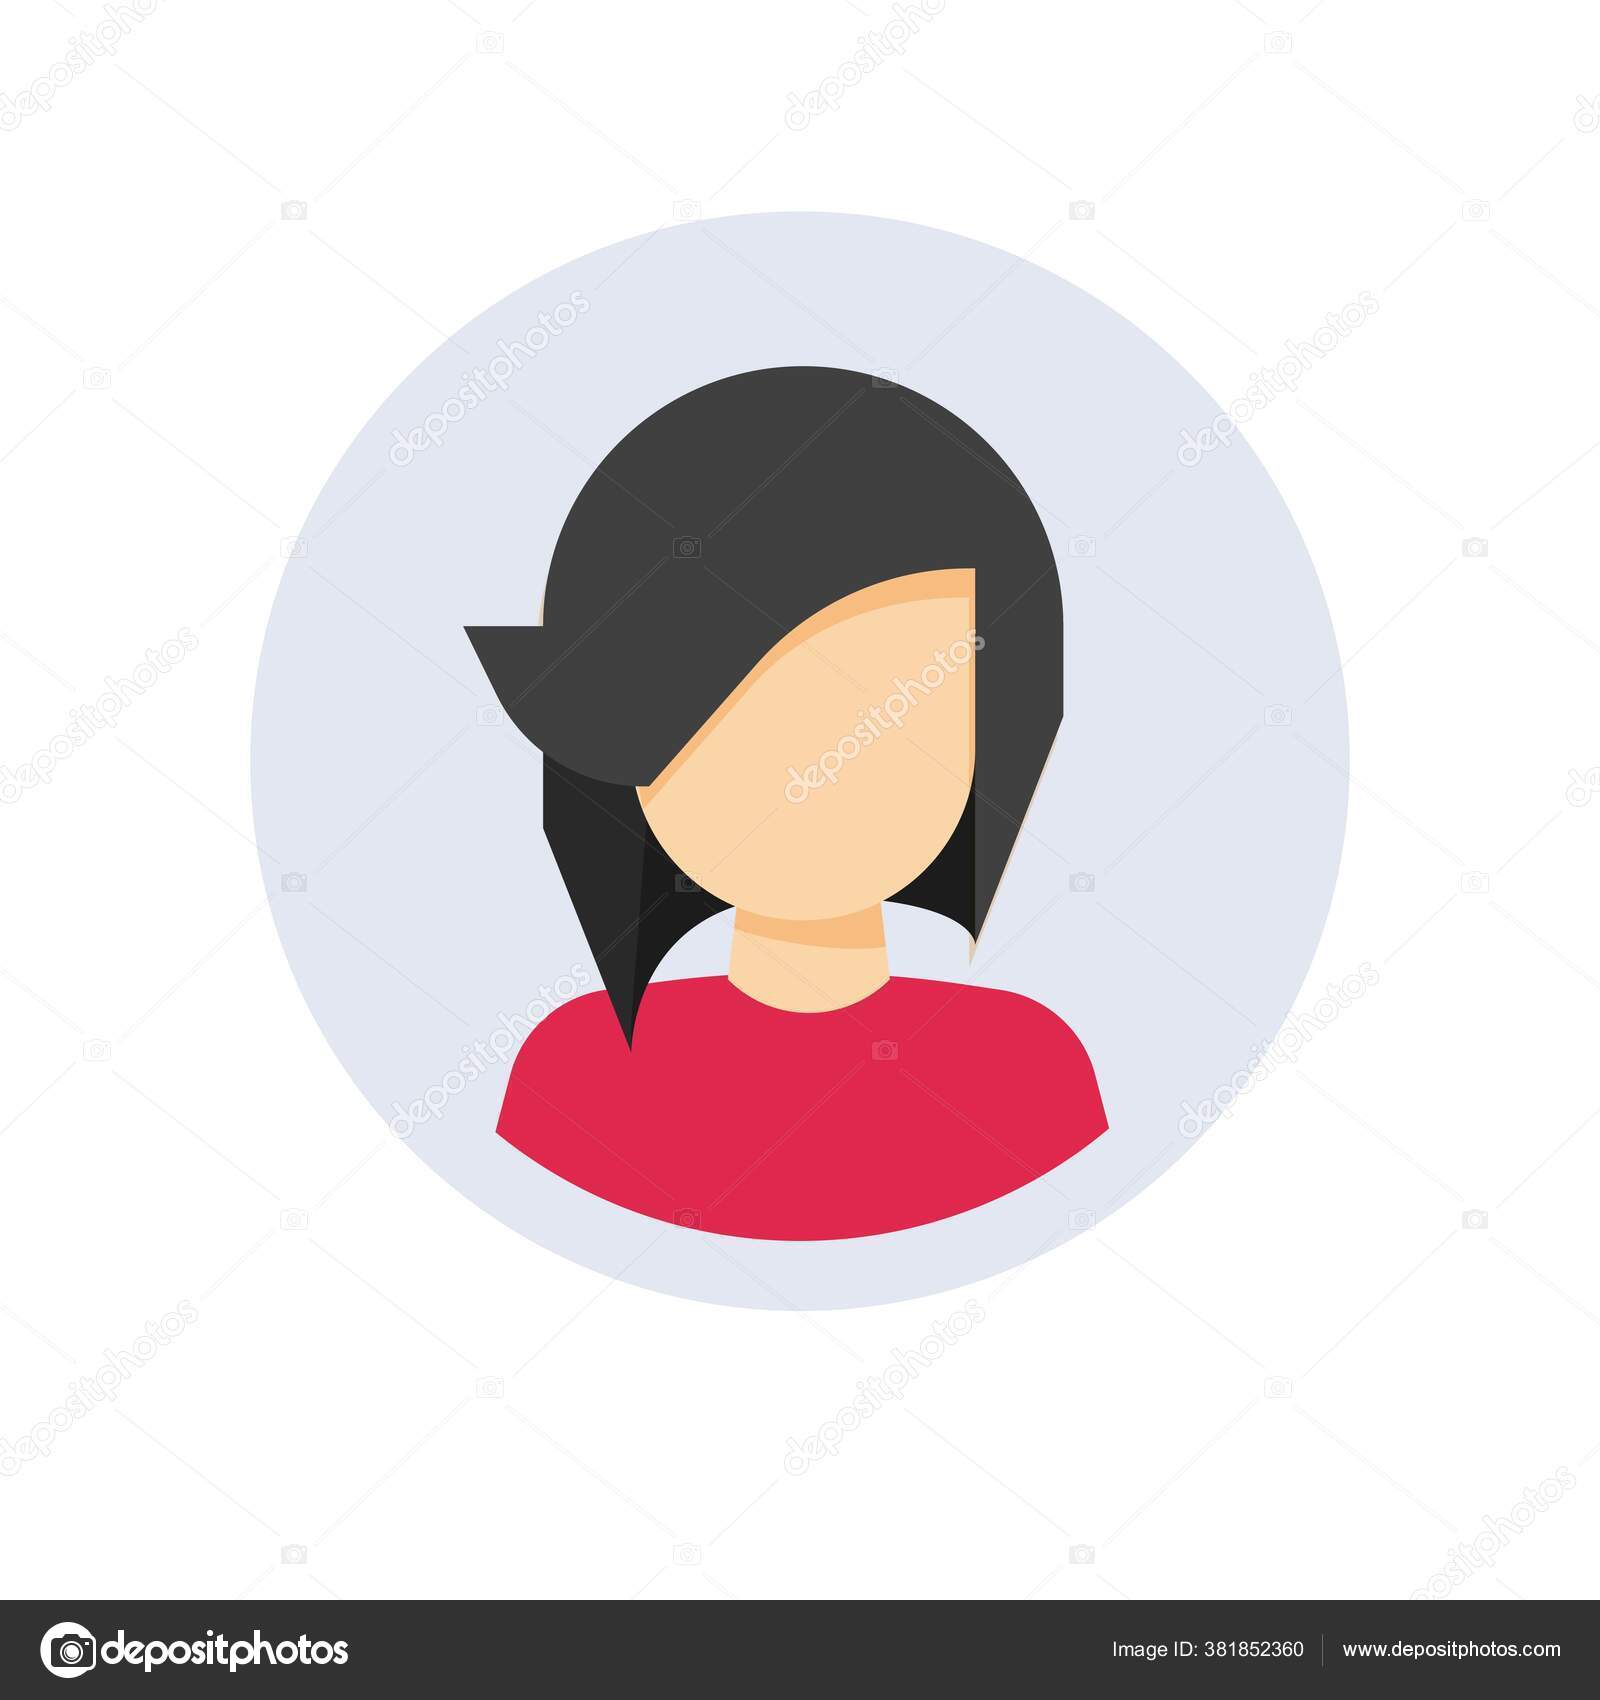 user, avatar, profile, account, person icon